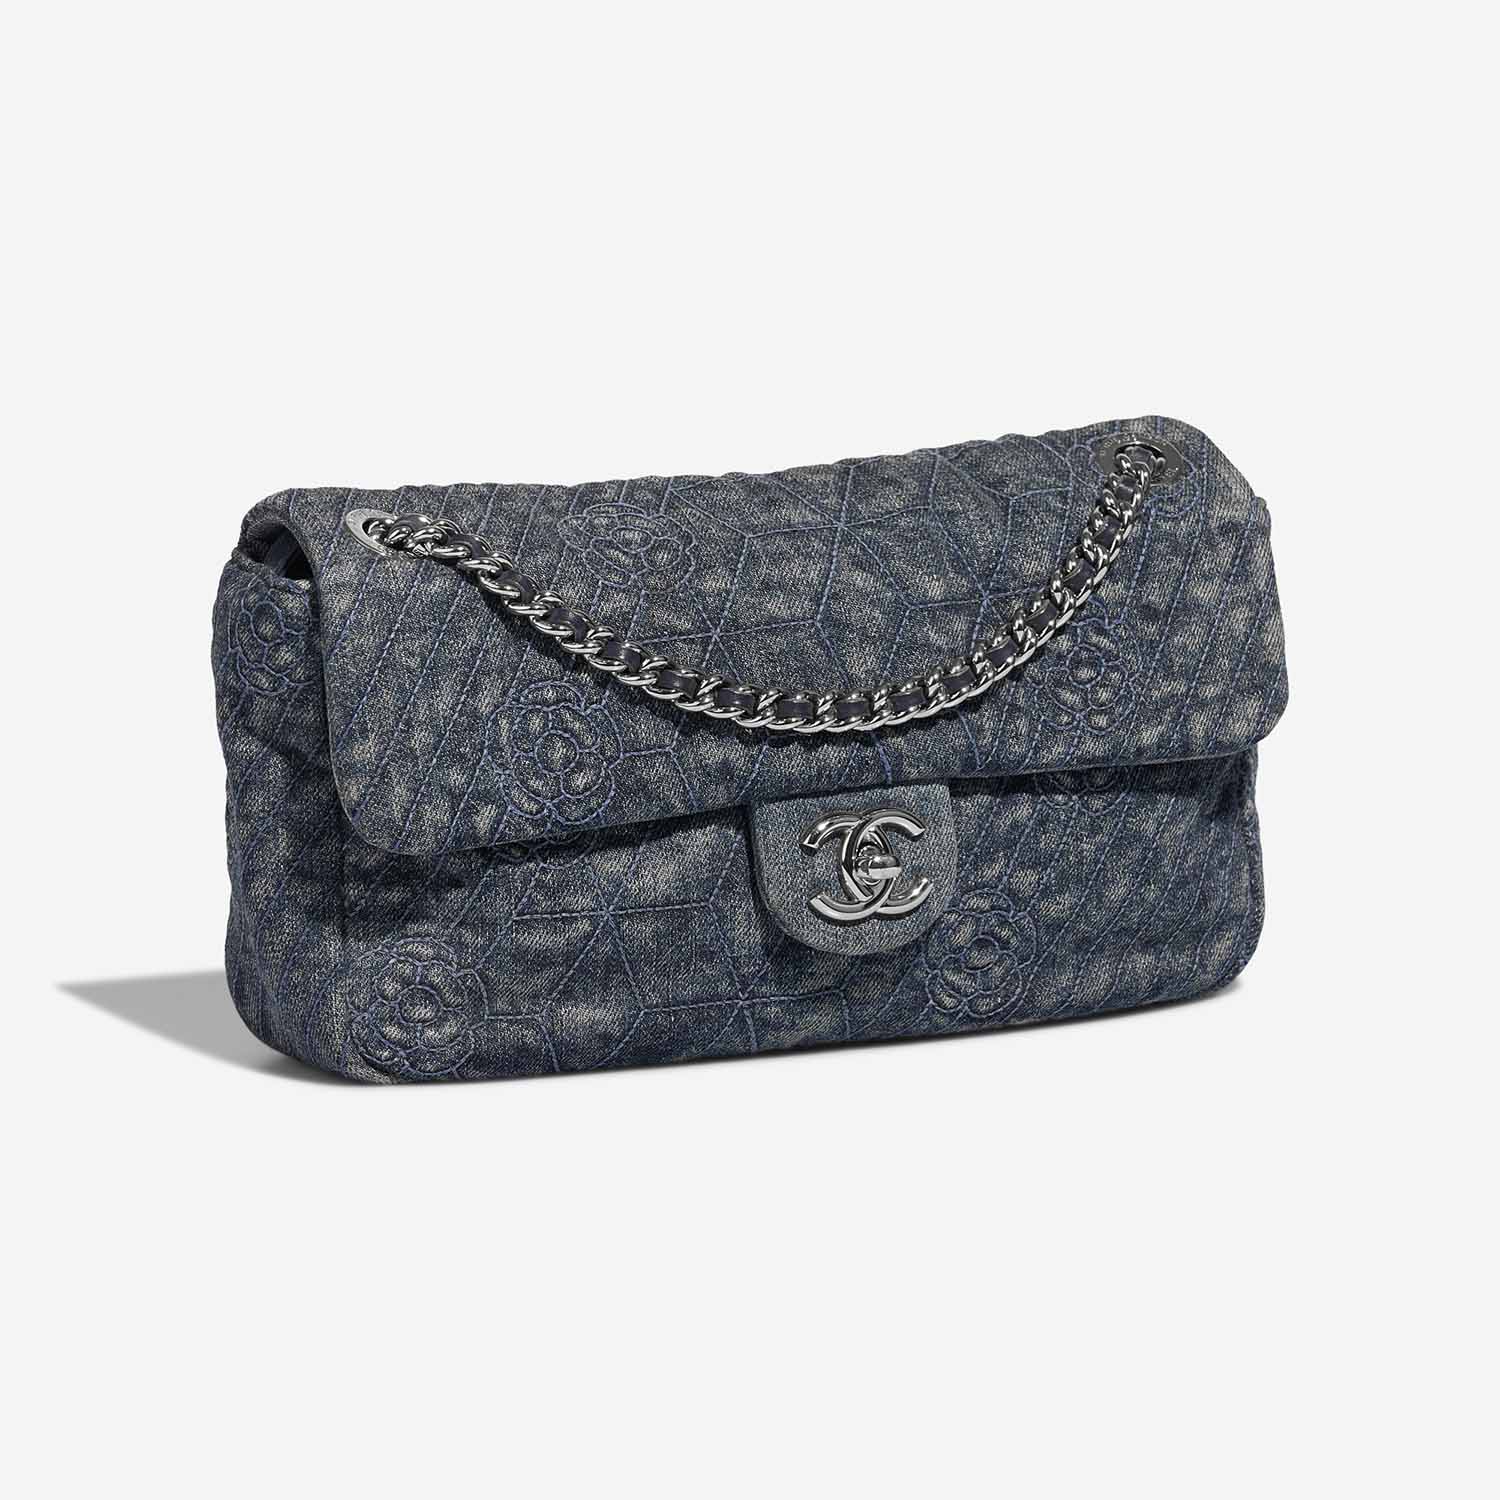 Chanel Timeless Medium Blue Side Front | Verkaufen Sie Ihre Designer-Tasche auf Saclab.com